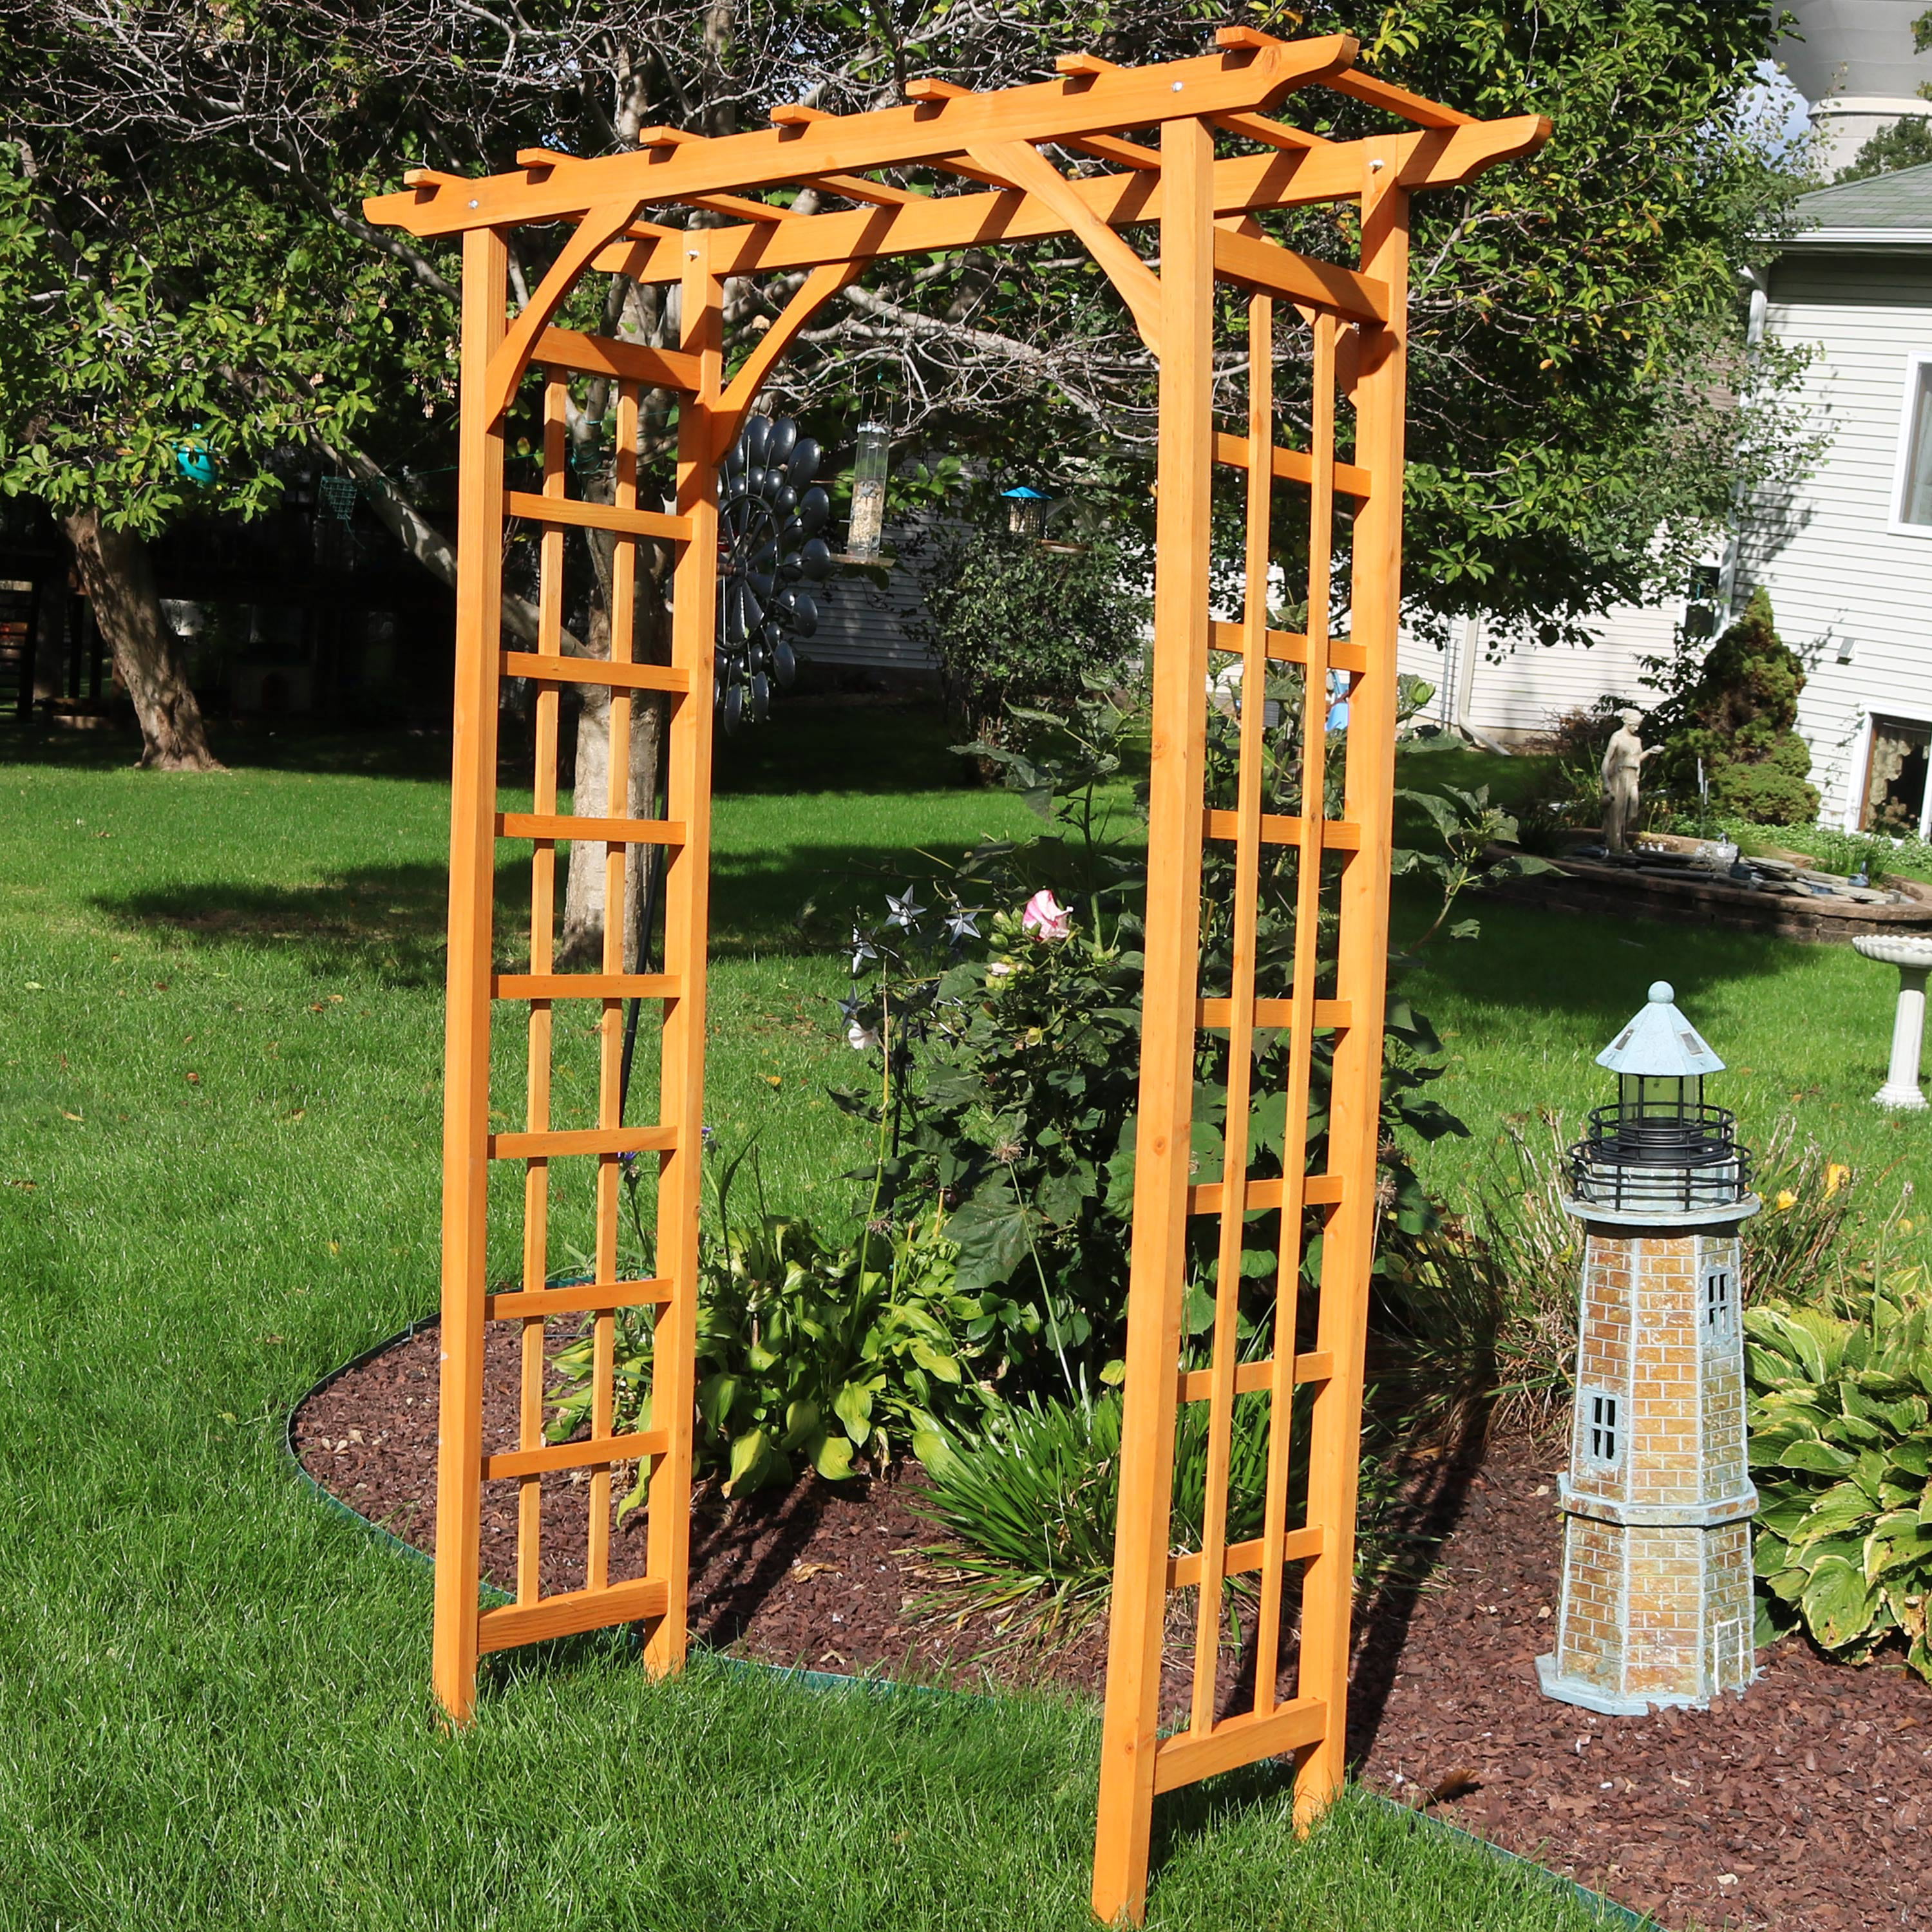 Sunnydaze Wooden Garden Arbor Walkway Wedding Arch - Garden Accent with